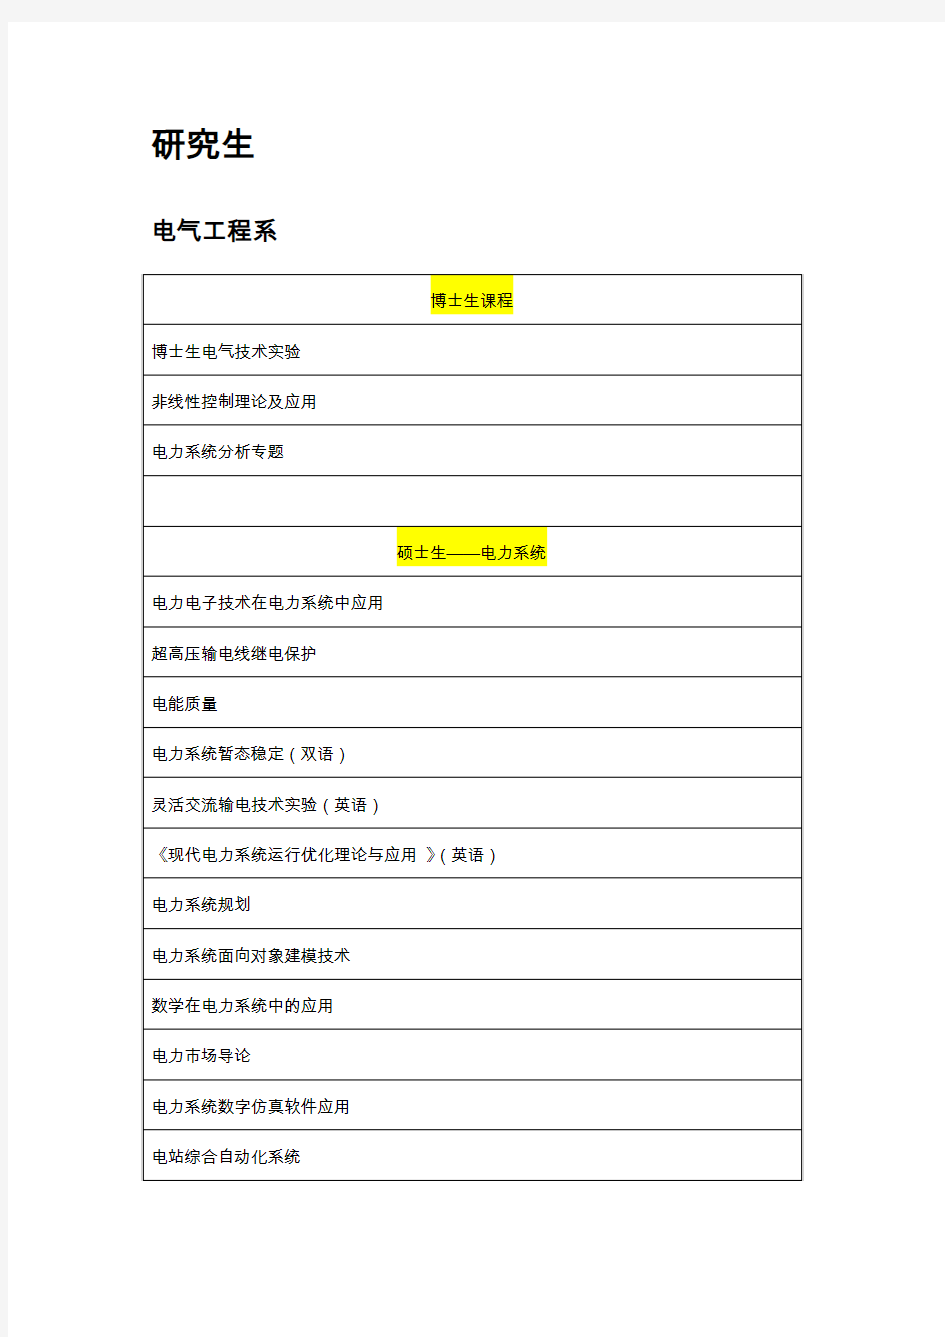 上海交通大学电子信息与电气工学学院研究生课表(全部系所)